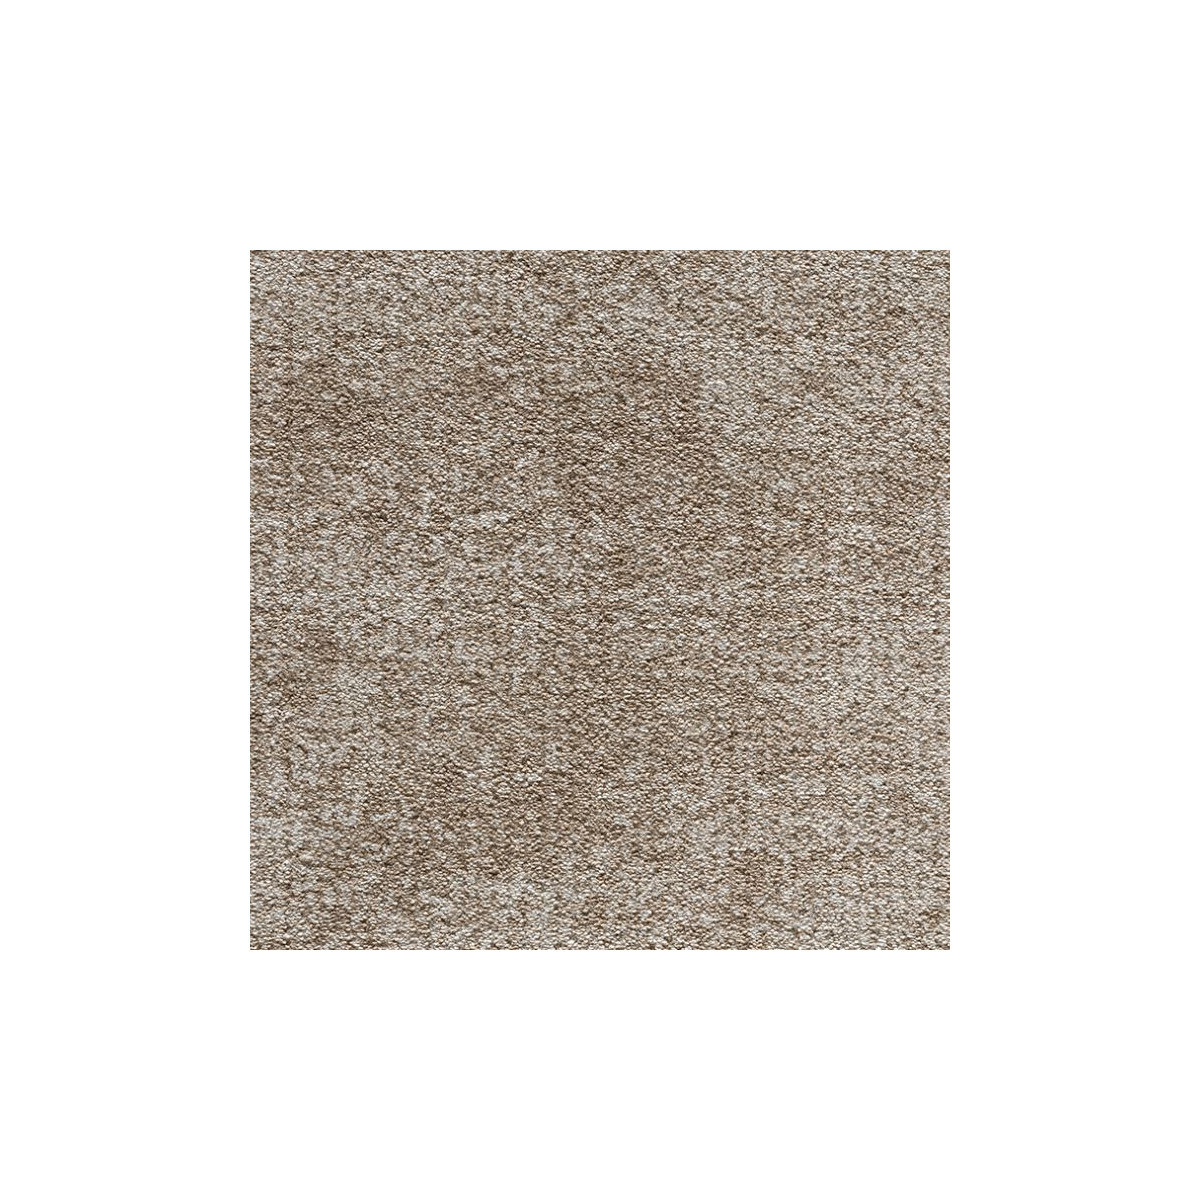 Metrážový koberec Velvet Rock 6954